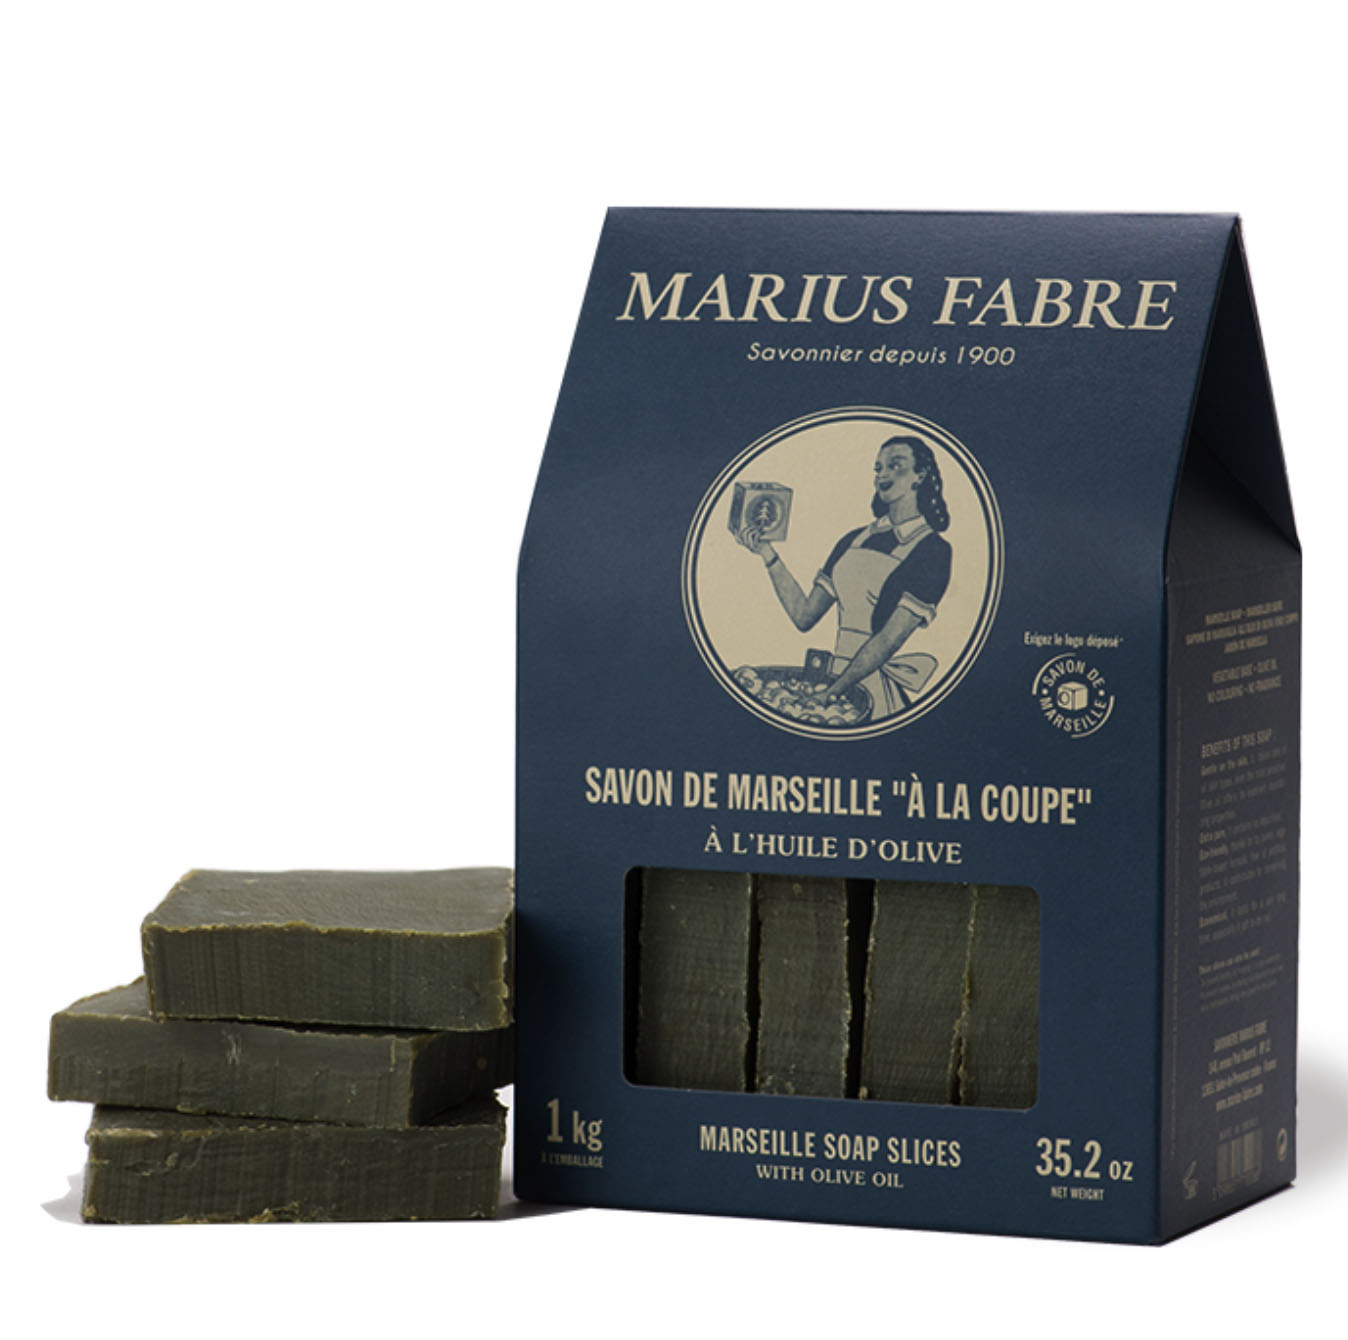 法國法鉑-經典馬賽皂復古盒裝/1kg盒裝